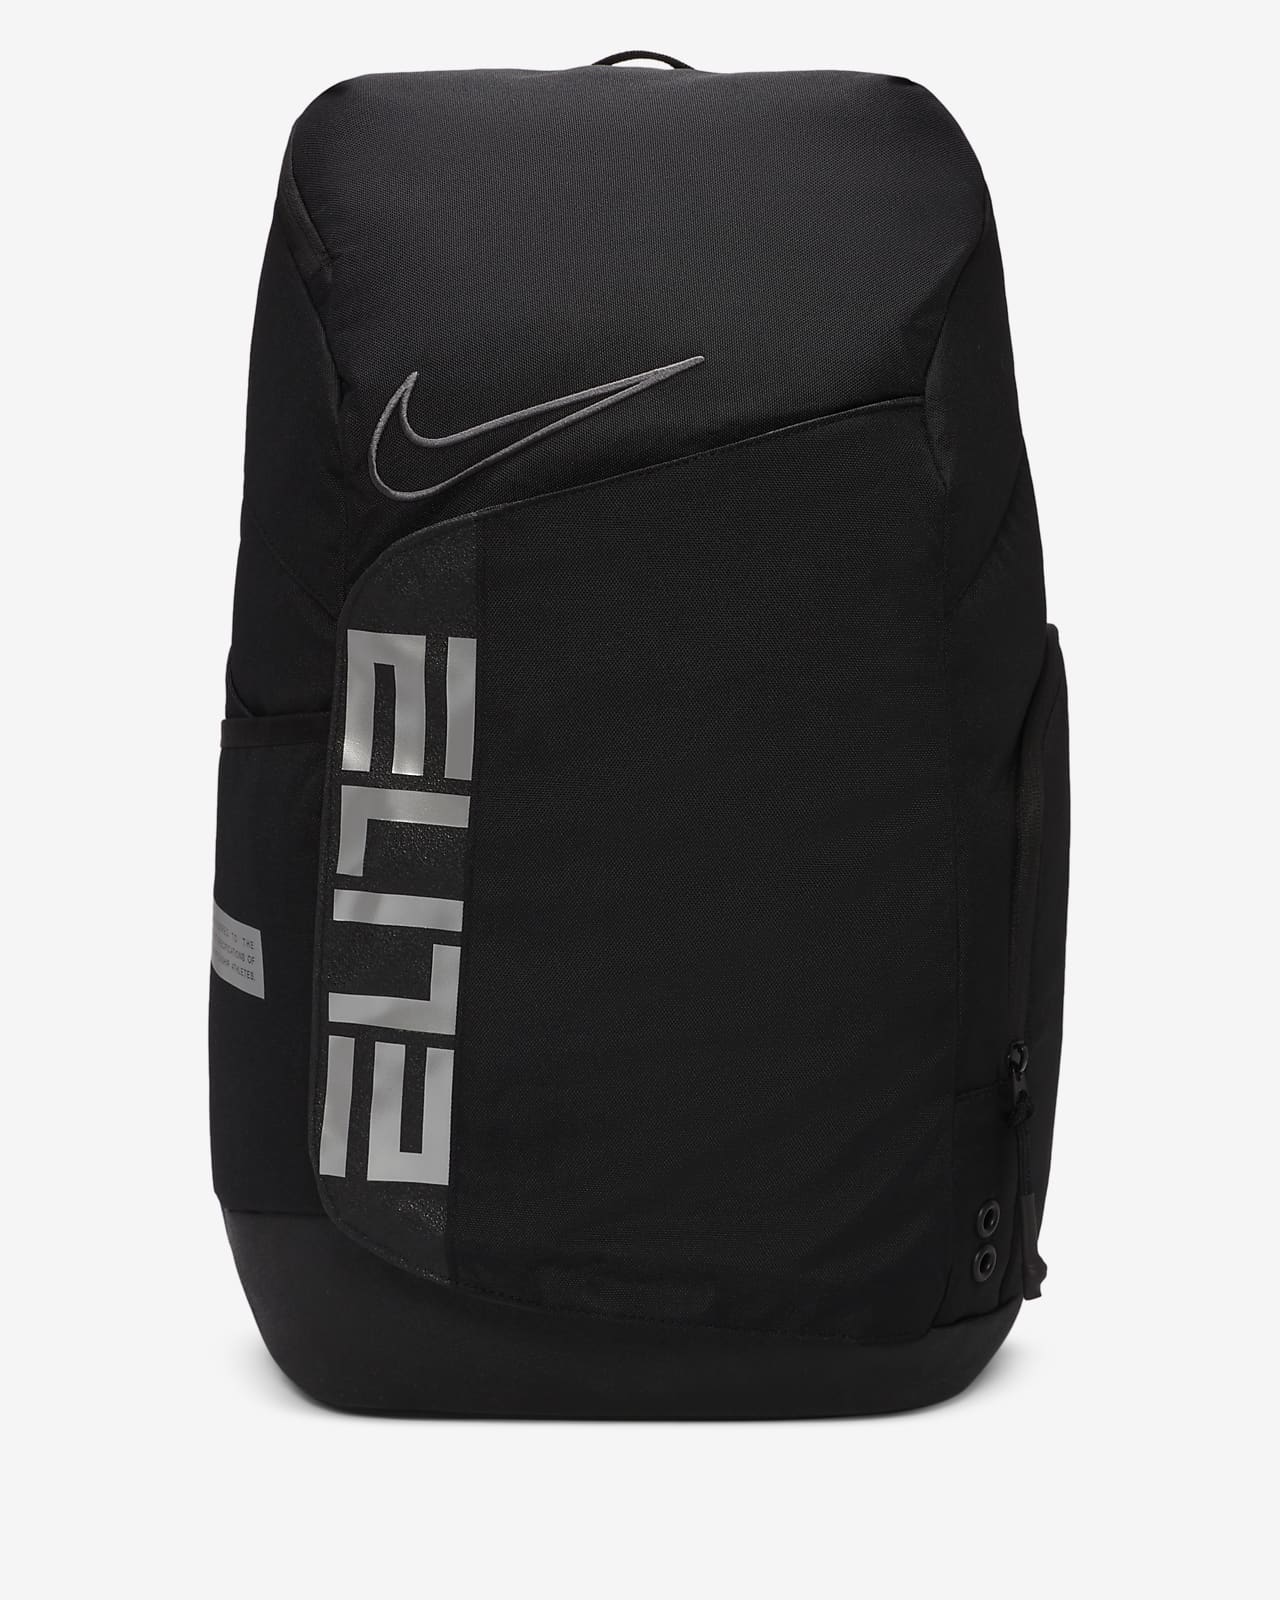 nike elite backpack cheap